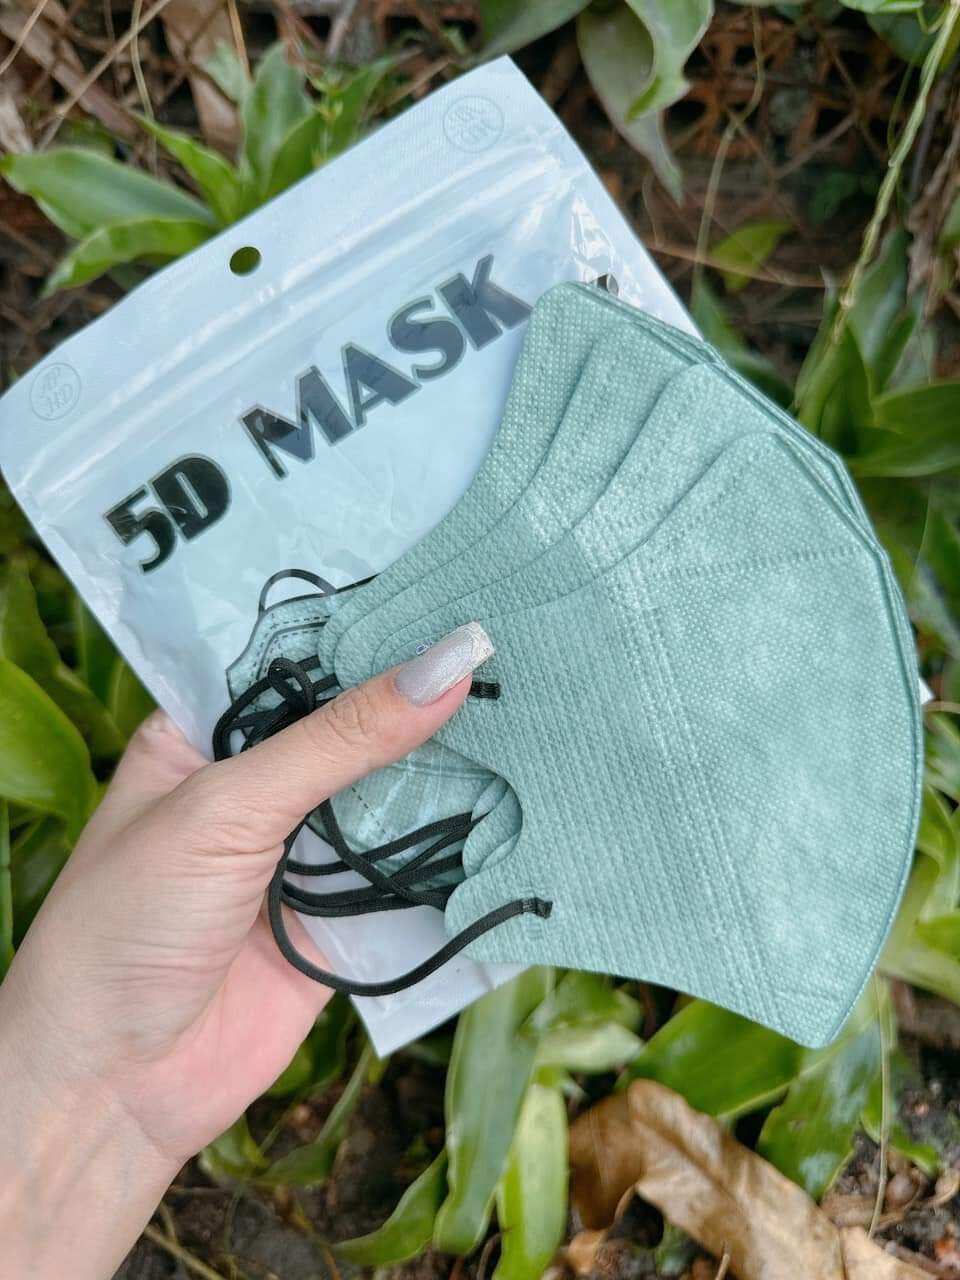 khẩu trang 5D mask an phong (1 cái dùng thử màu ngẩu nhiên unisex)